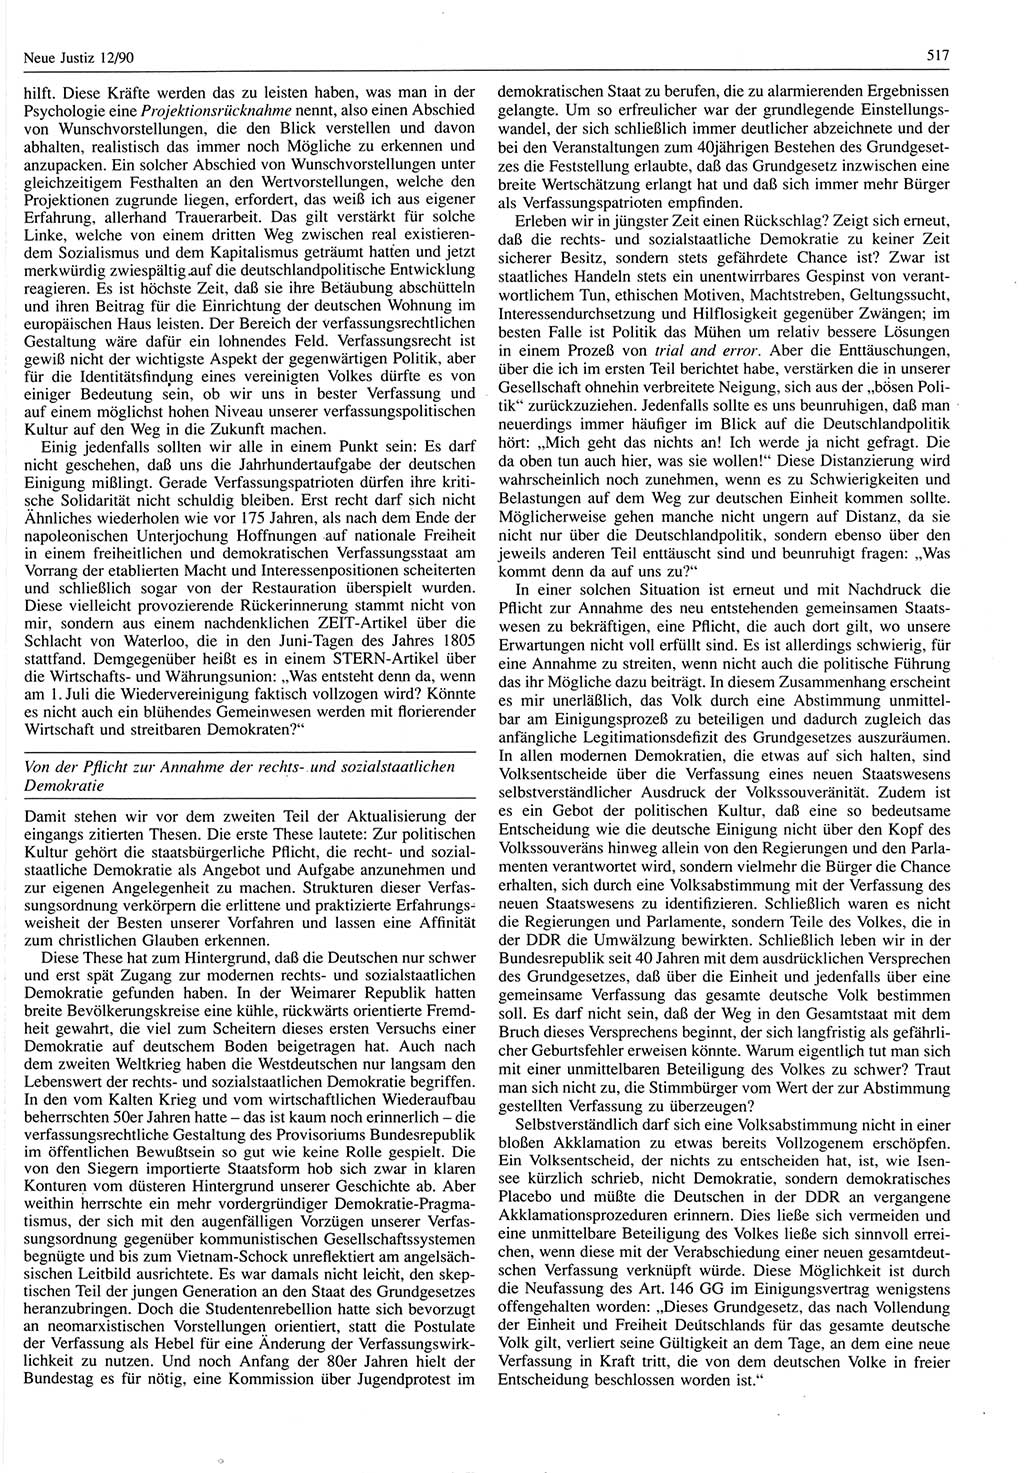 Neue Justiz (NJ), Zeitschrift für Rechtsetzung und Rechtsanwendung [Deutsche Demokratische Republik (DDR)], 44. Jahrgang 1990, Seite 517 (NJ DDR 1990, S. 517)